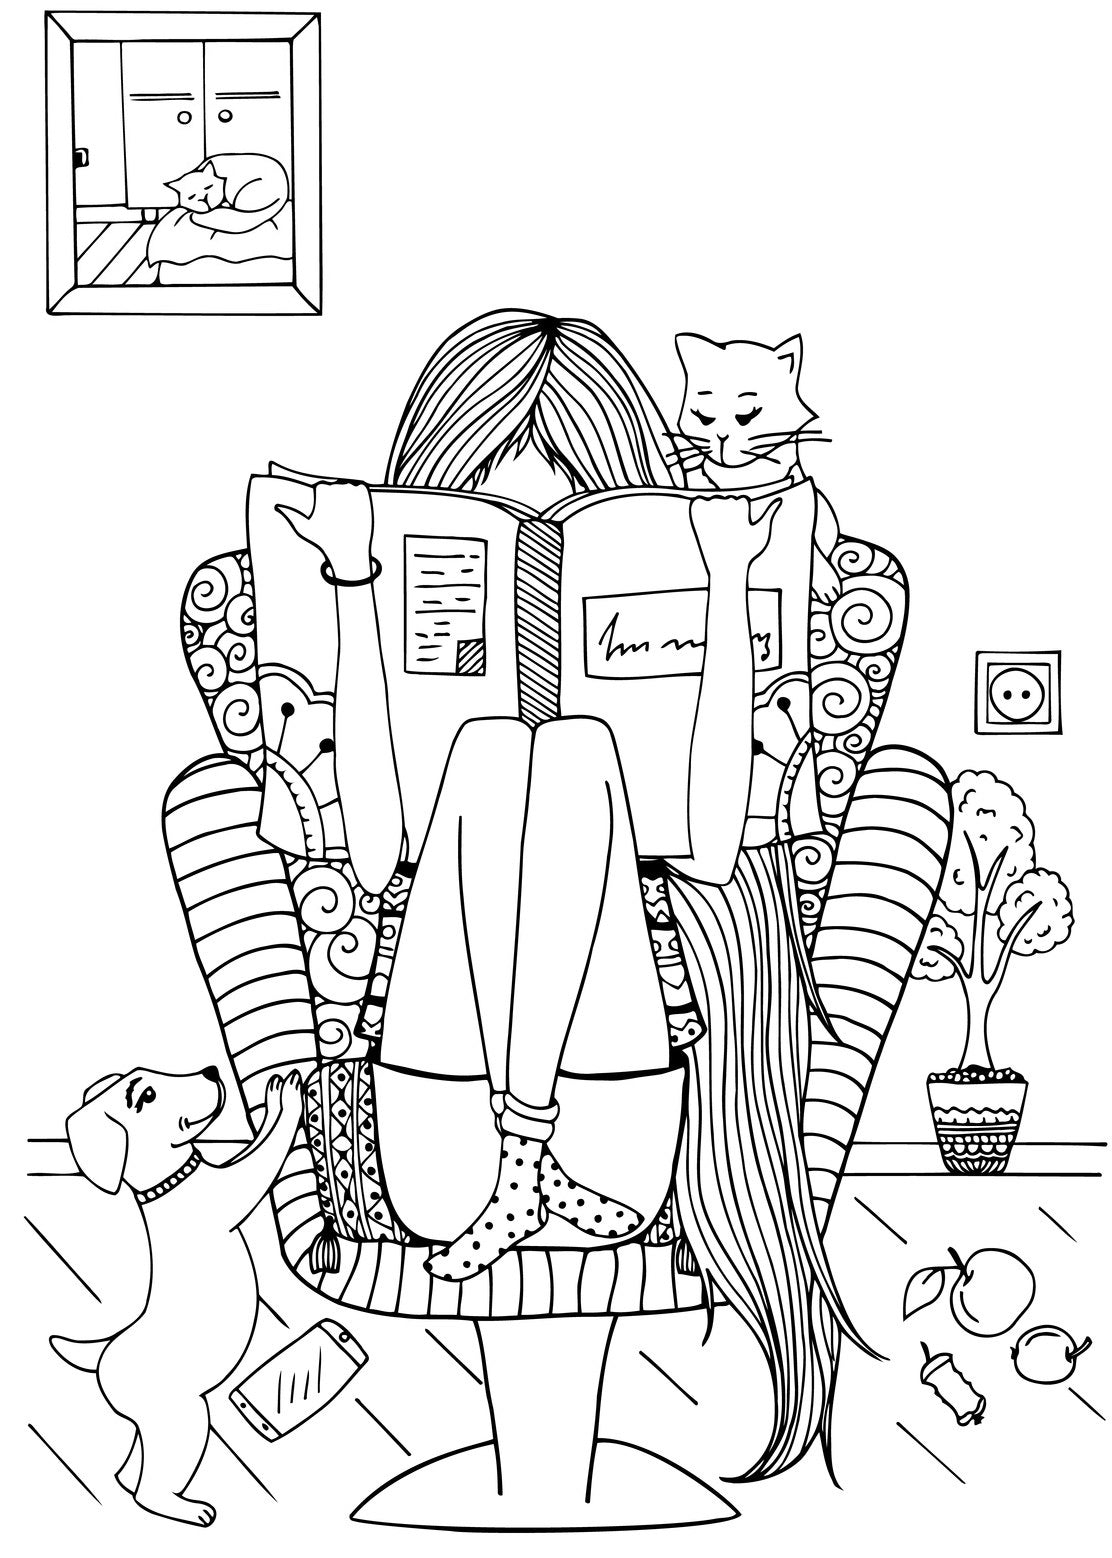 Bookworms - Book Lovers Coloring Book For Readers - Book Art  Rachel Mintz